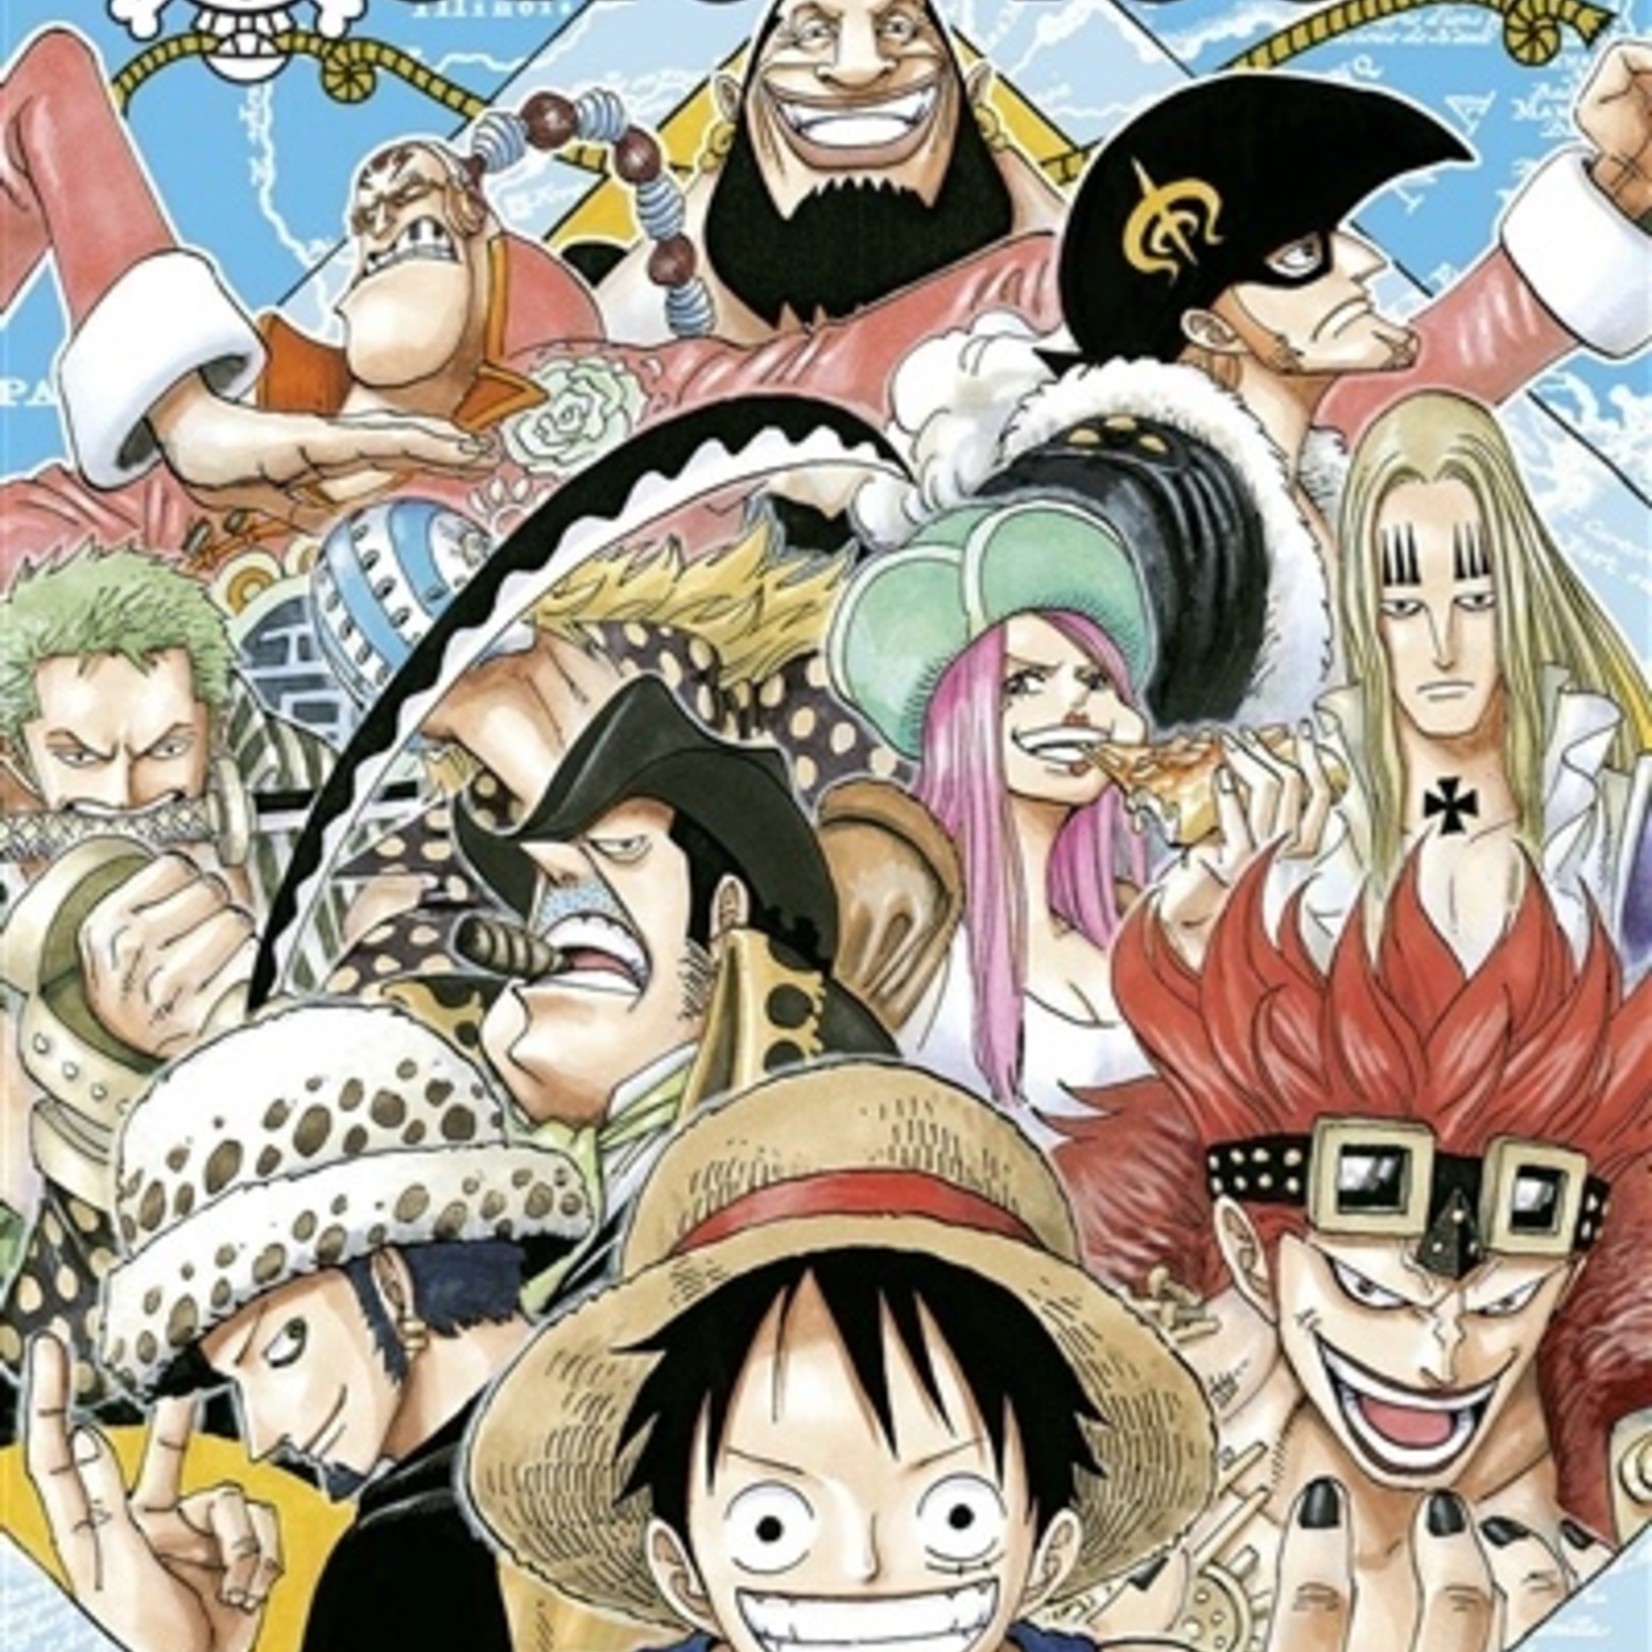 Glénat Manga - One Piece Tome 051